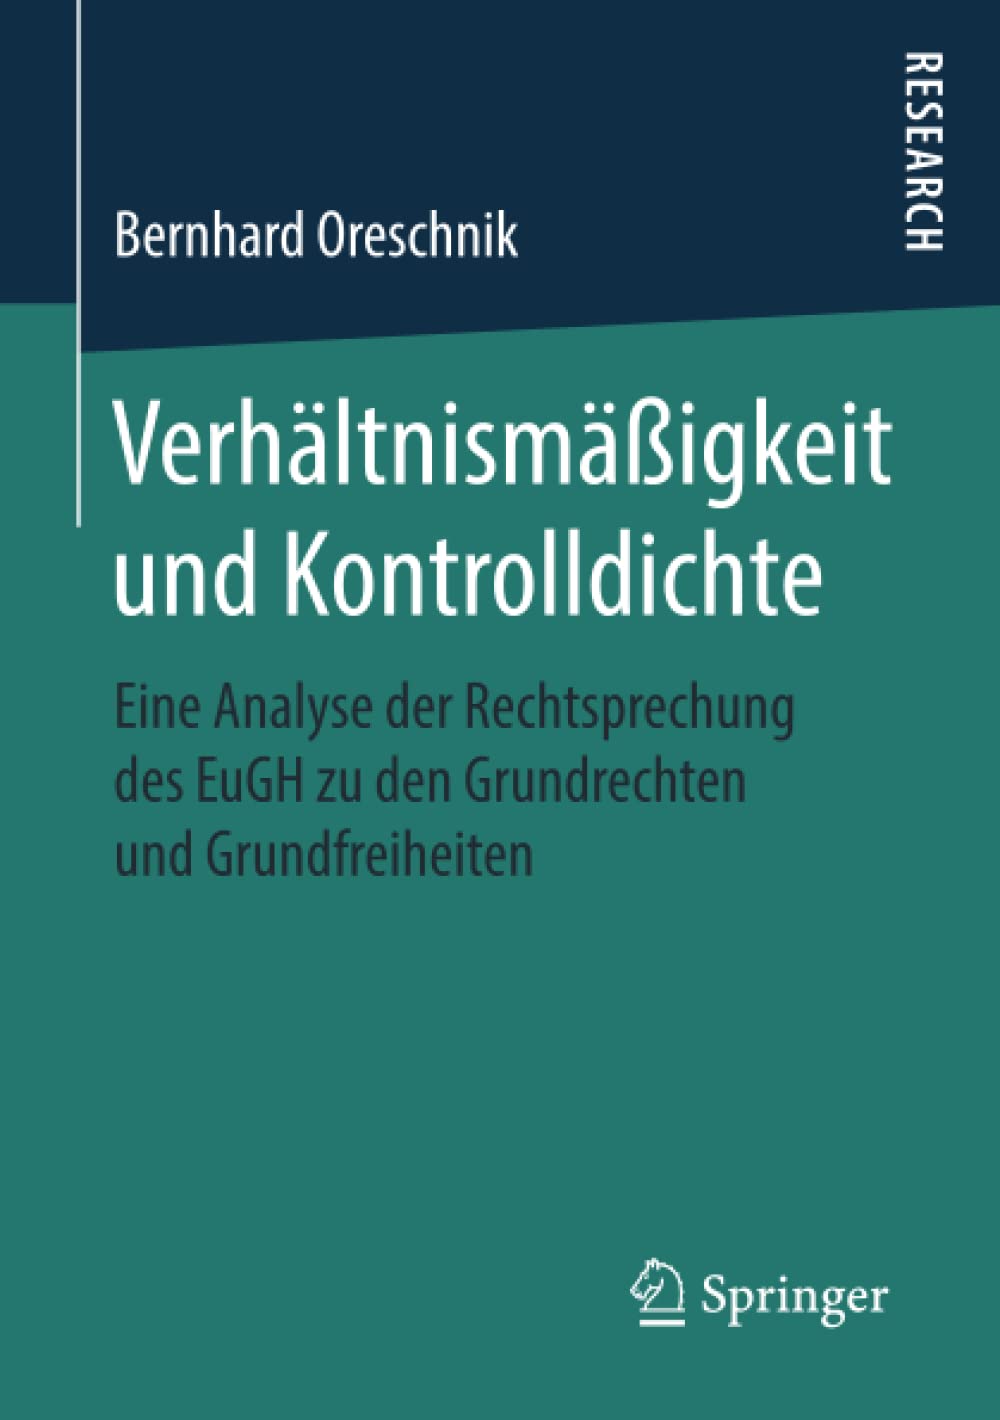 Verhältnismäßigkeit und Kontrolldichte: Eine Analyse der Rechtsprechung des EuGH zu den Grundrechten und Grundfreiheiten (German Edition)